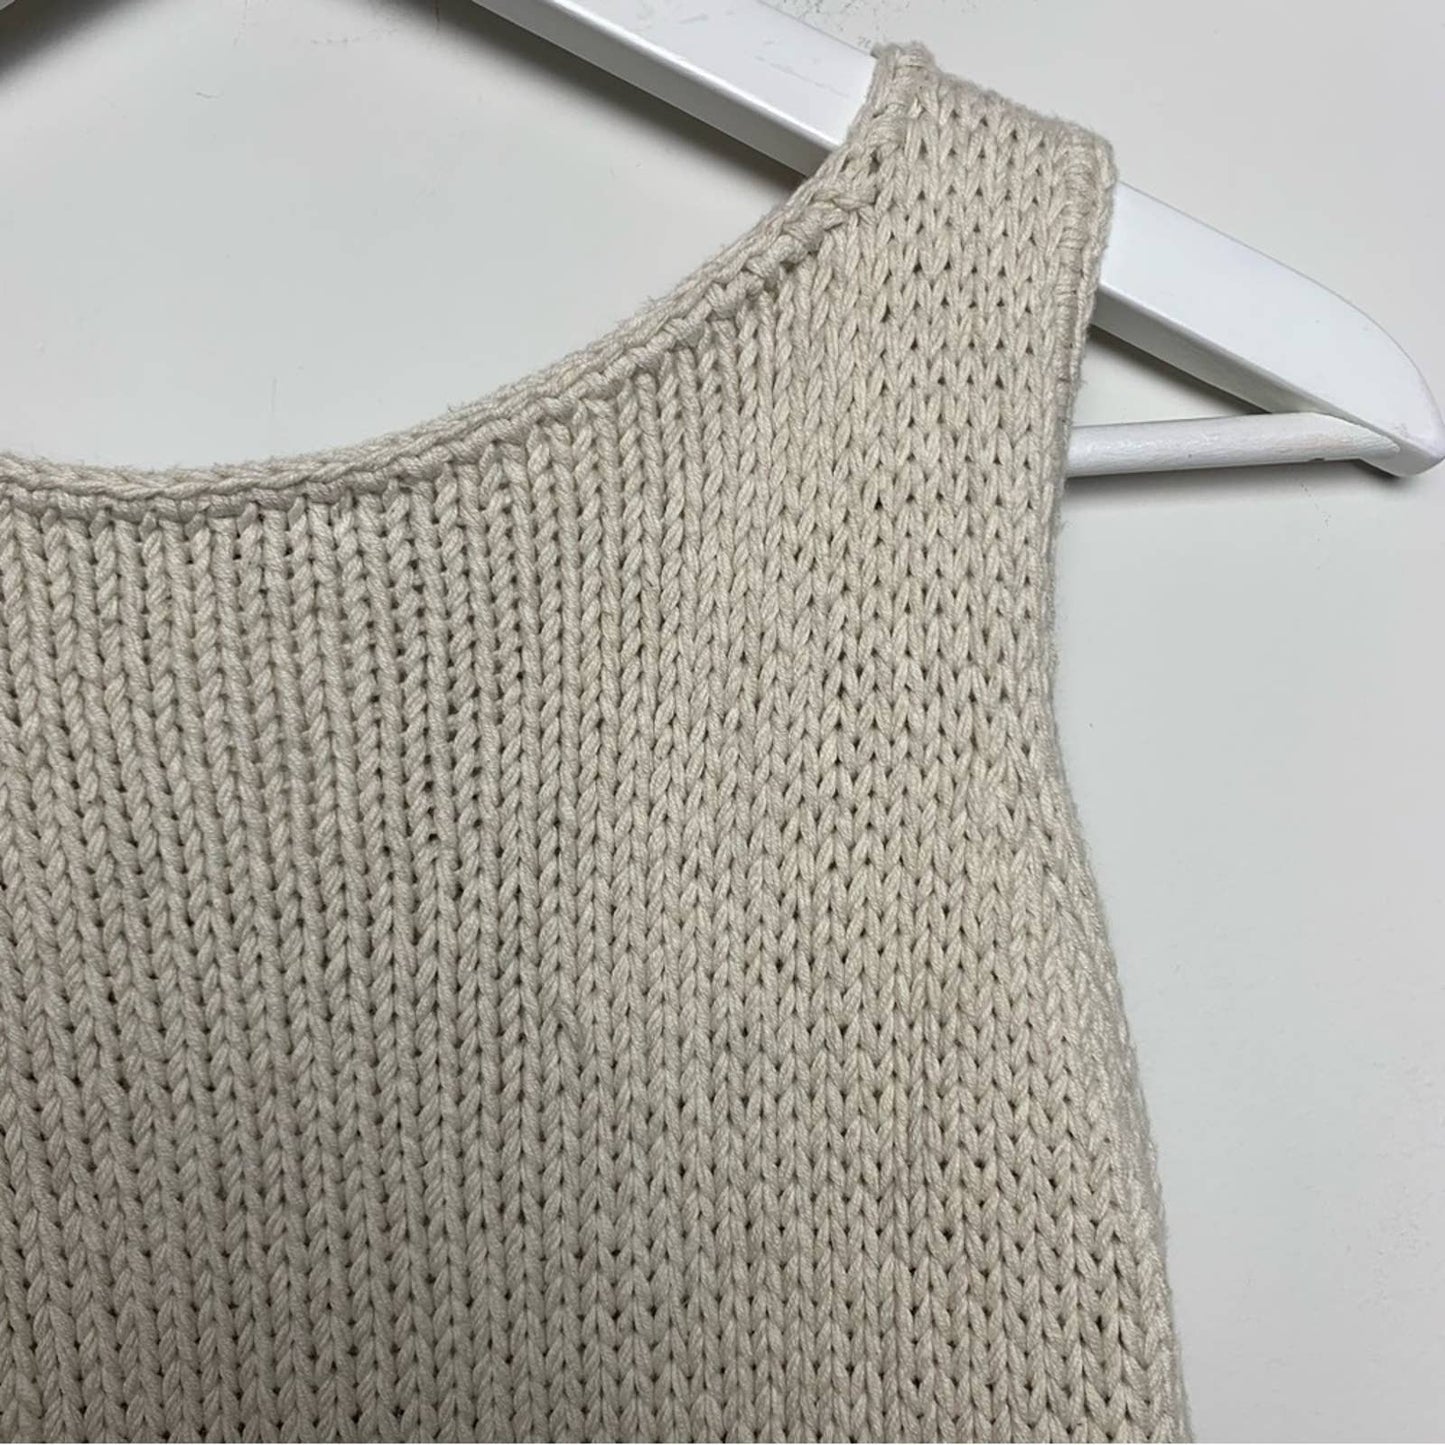 Vintage Michael Kors Cream Knit Tank Top Vest Cotton